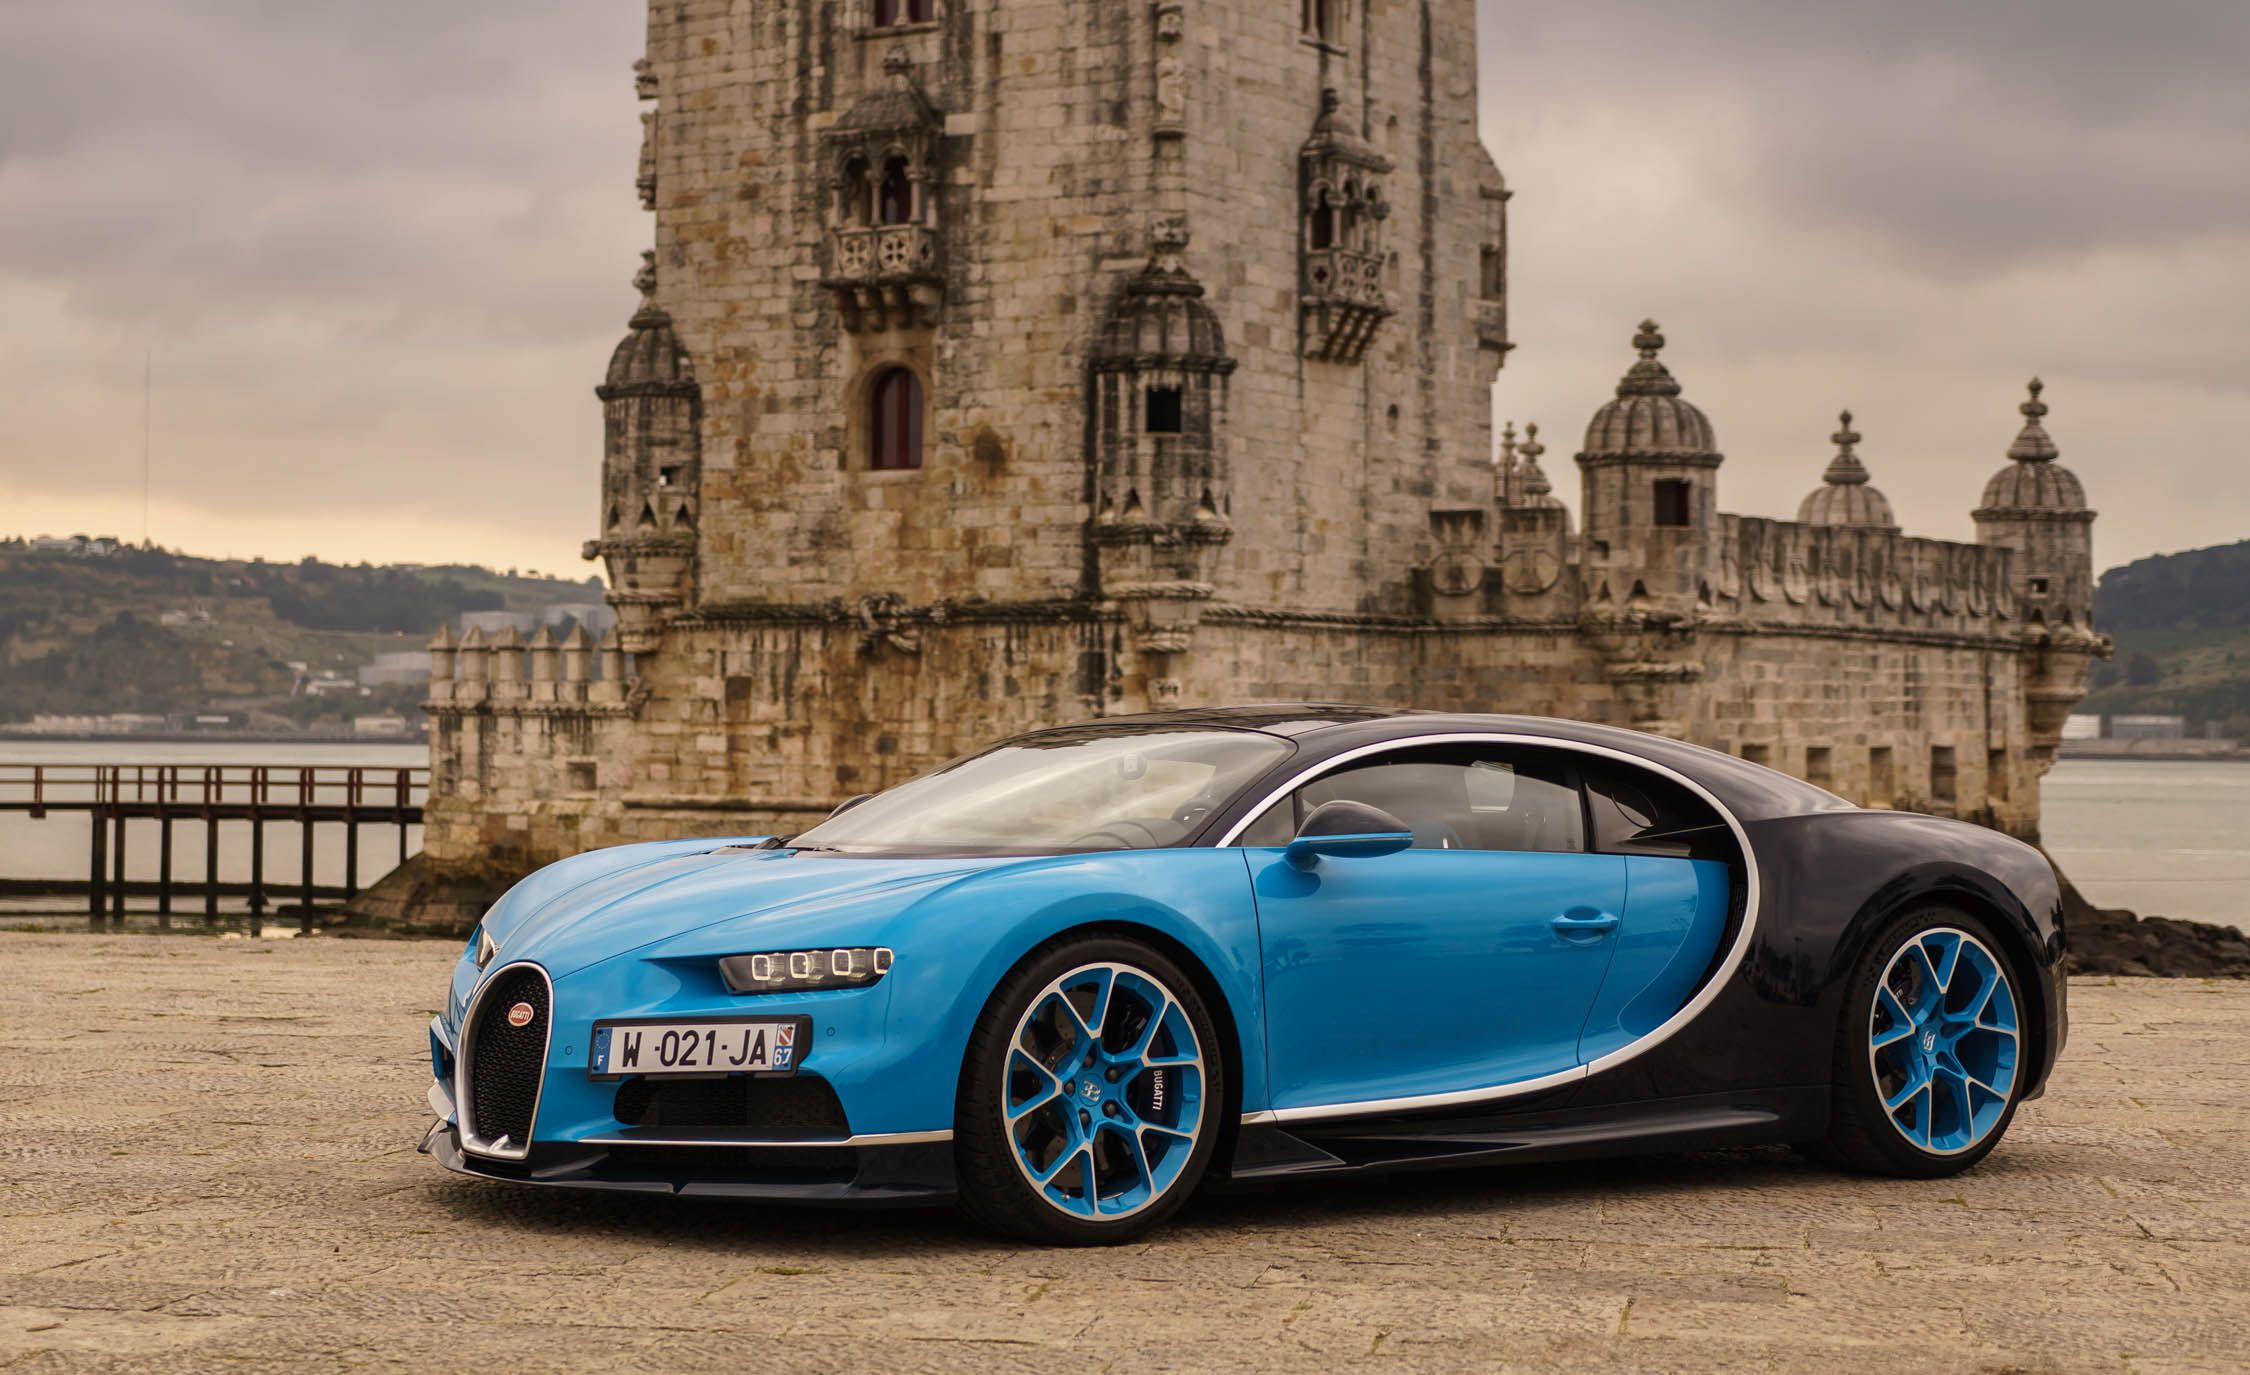 Bugatti Chiron Reviews | Bugatti Chiron Price, Photos, and Specs ...